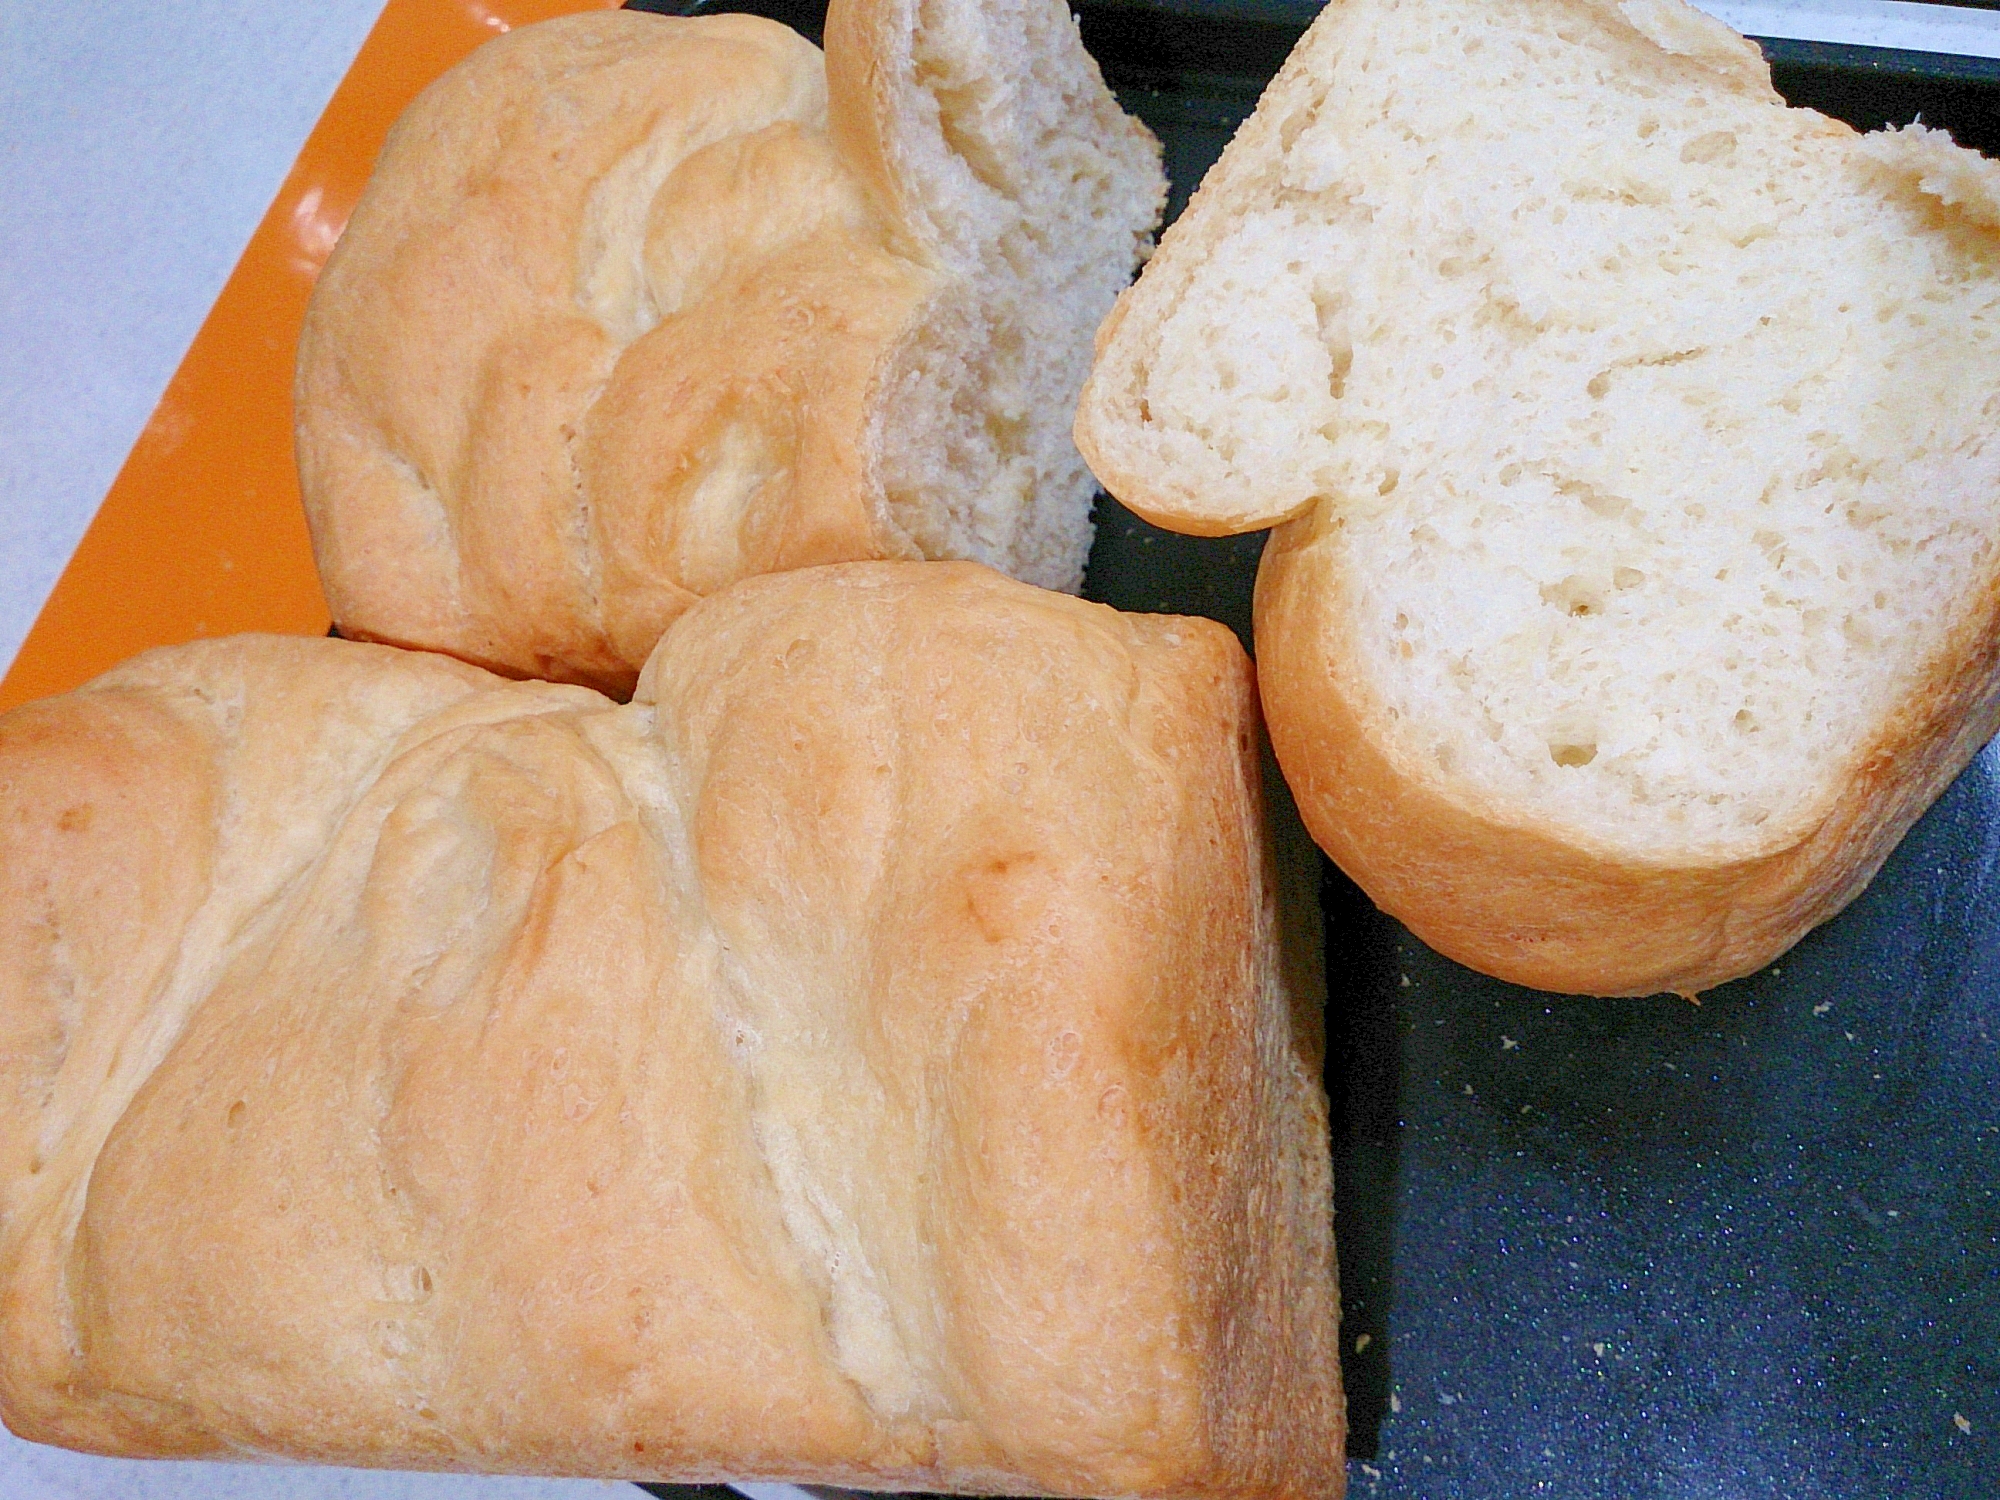 ２斤用のHBとオーブンでミニサイズ食パン大量生産